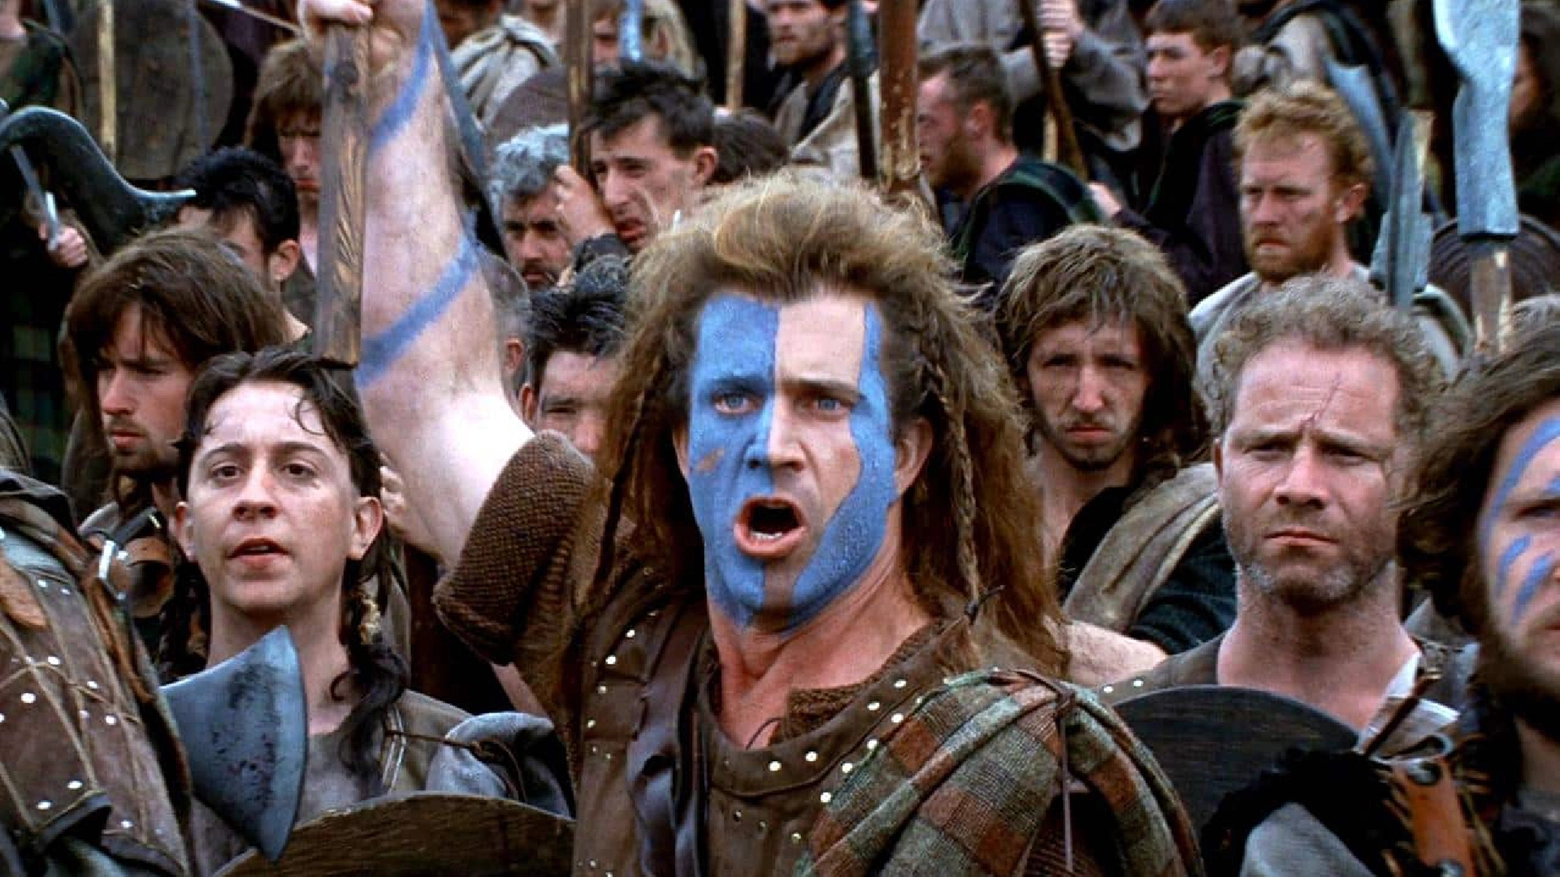 Il film Braveheart, ambientato durante le guerre d'indipendenza scozzesi del XIII secolo